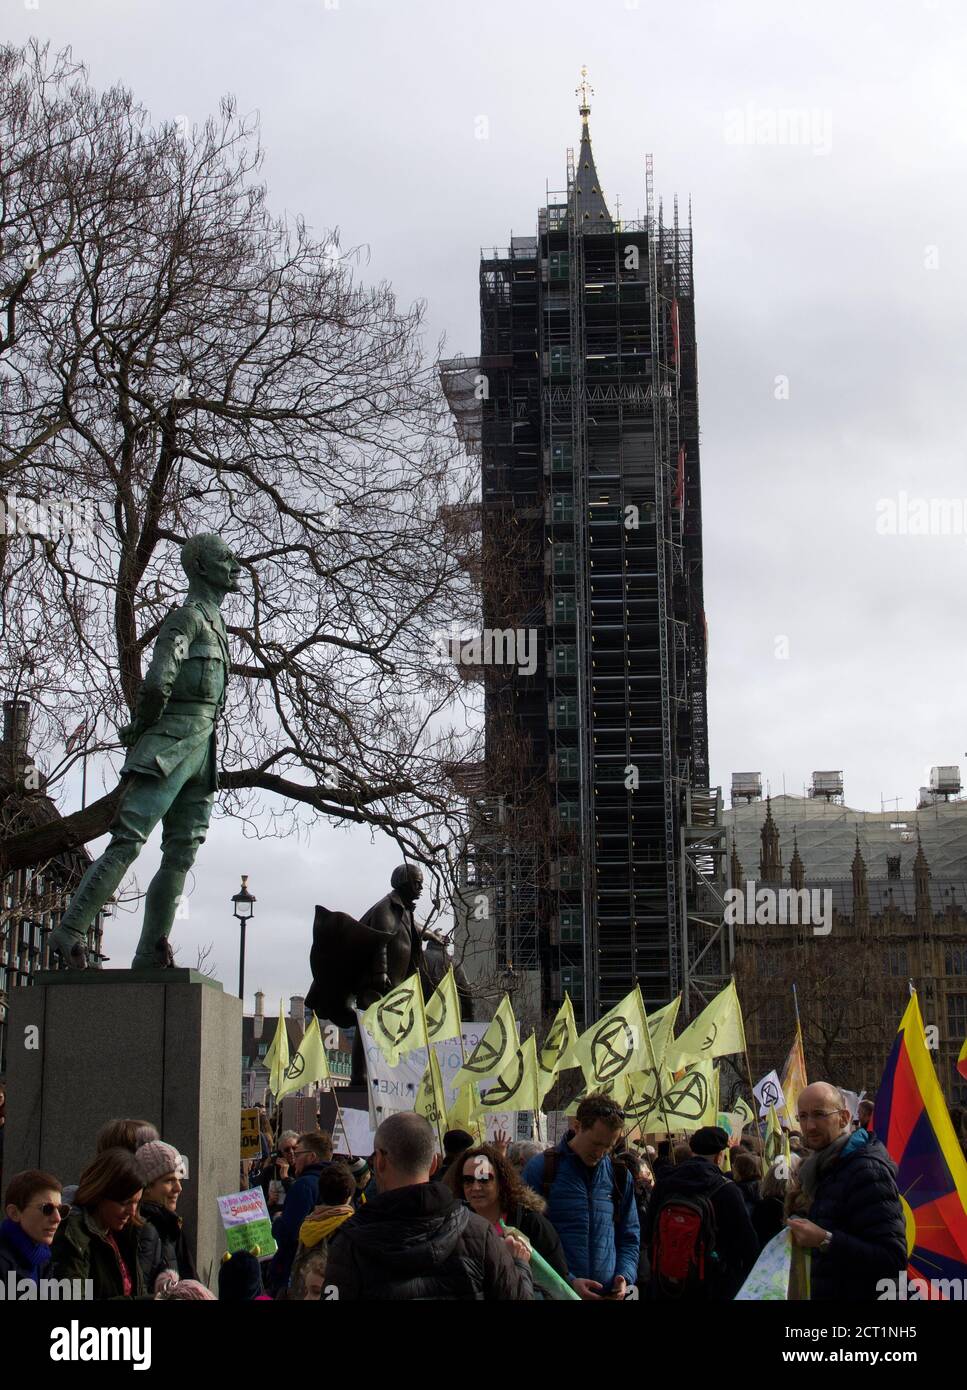 Londres, Angleterre, Royaume-Uni - 02/14/2020 : des étudiants brandissant des banderoles, frappant et protestant pour l'action climatique sur la place du Parlement Banque D'Images